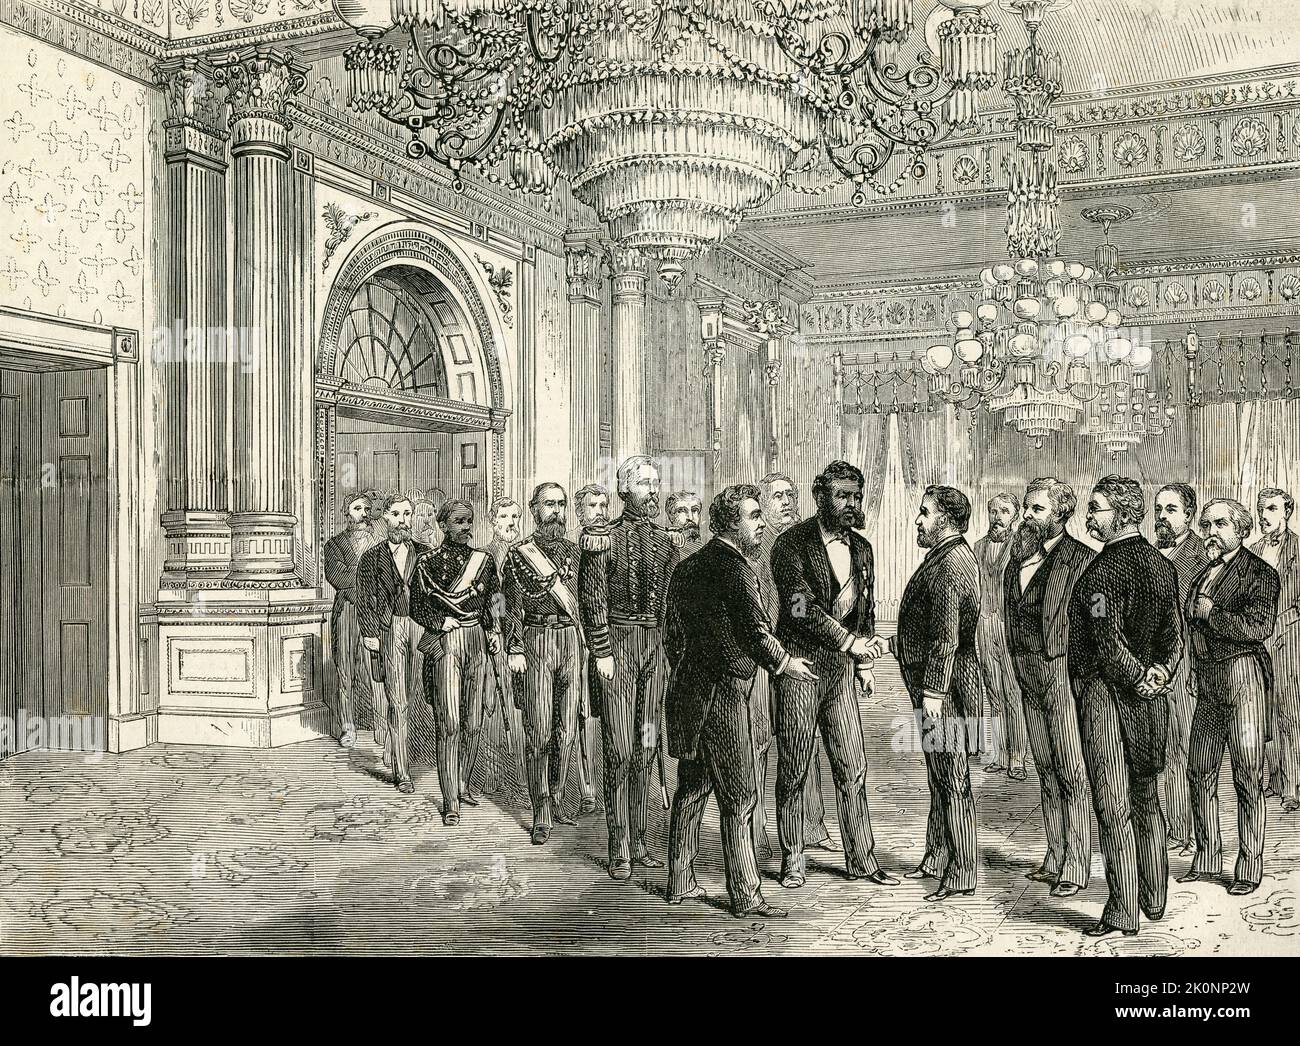 König Kalākaua von Hawaii trifft Präsident Grant im Weißen Haus zu seinem Staatsbesuch, 1874. Veröffentlicht Am 2. Januar 1875 Stockfoto